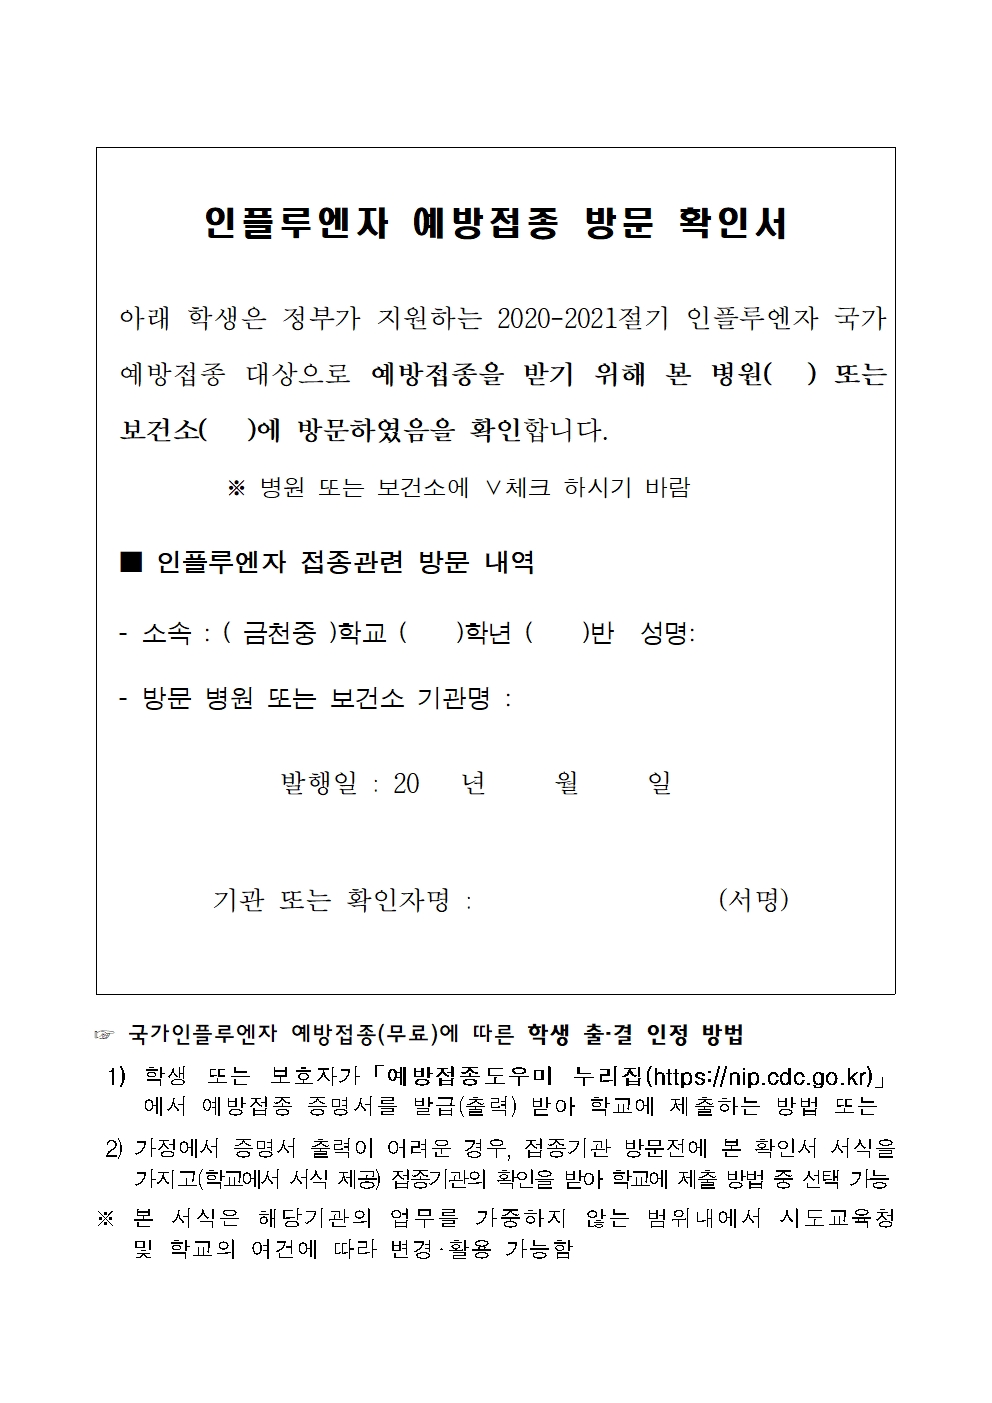 제137호 인플루엔자 예방접종 출석인정 안내 가정통신문002